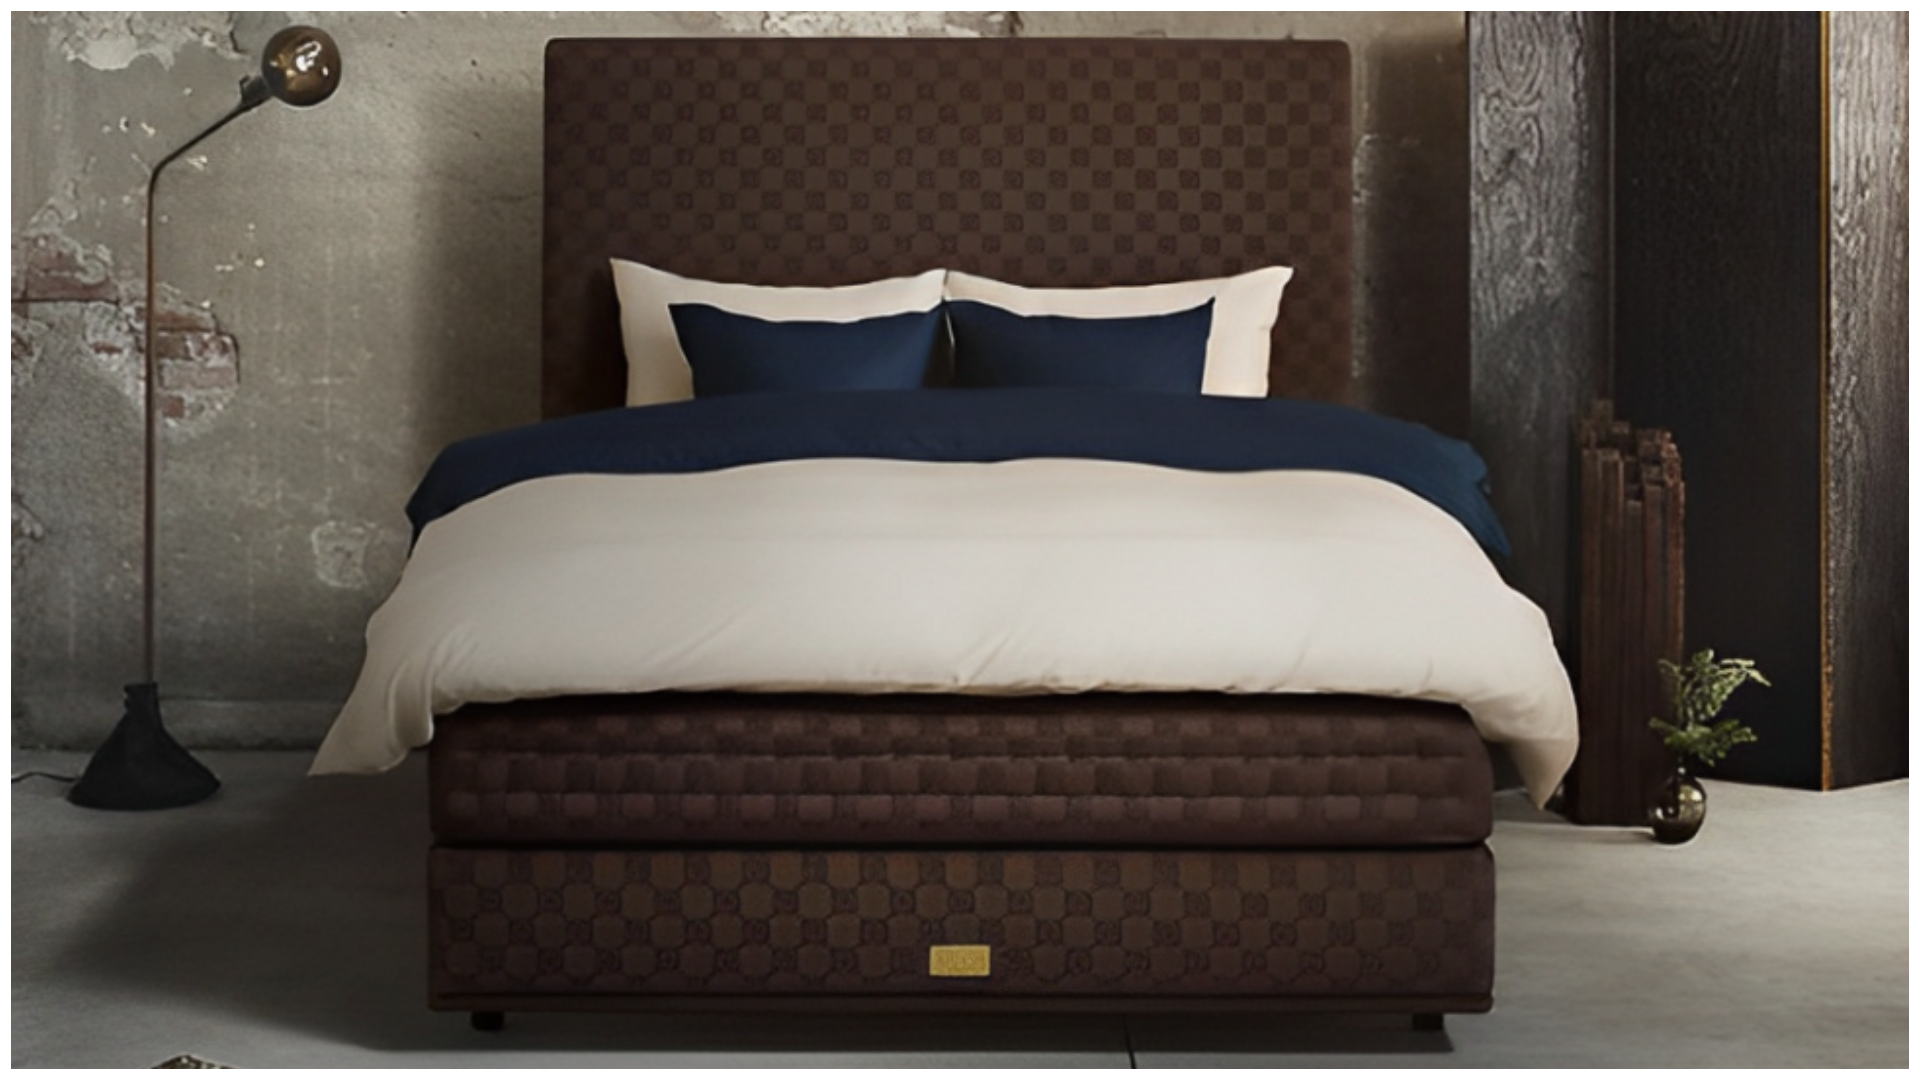 Deep brown King Marwari mattress and bed